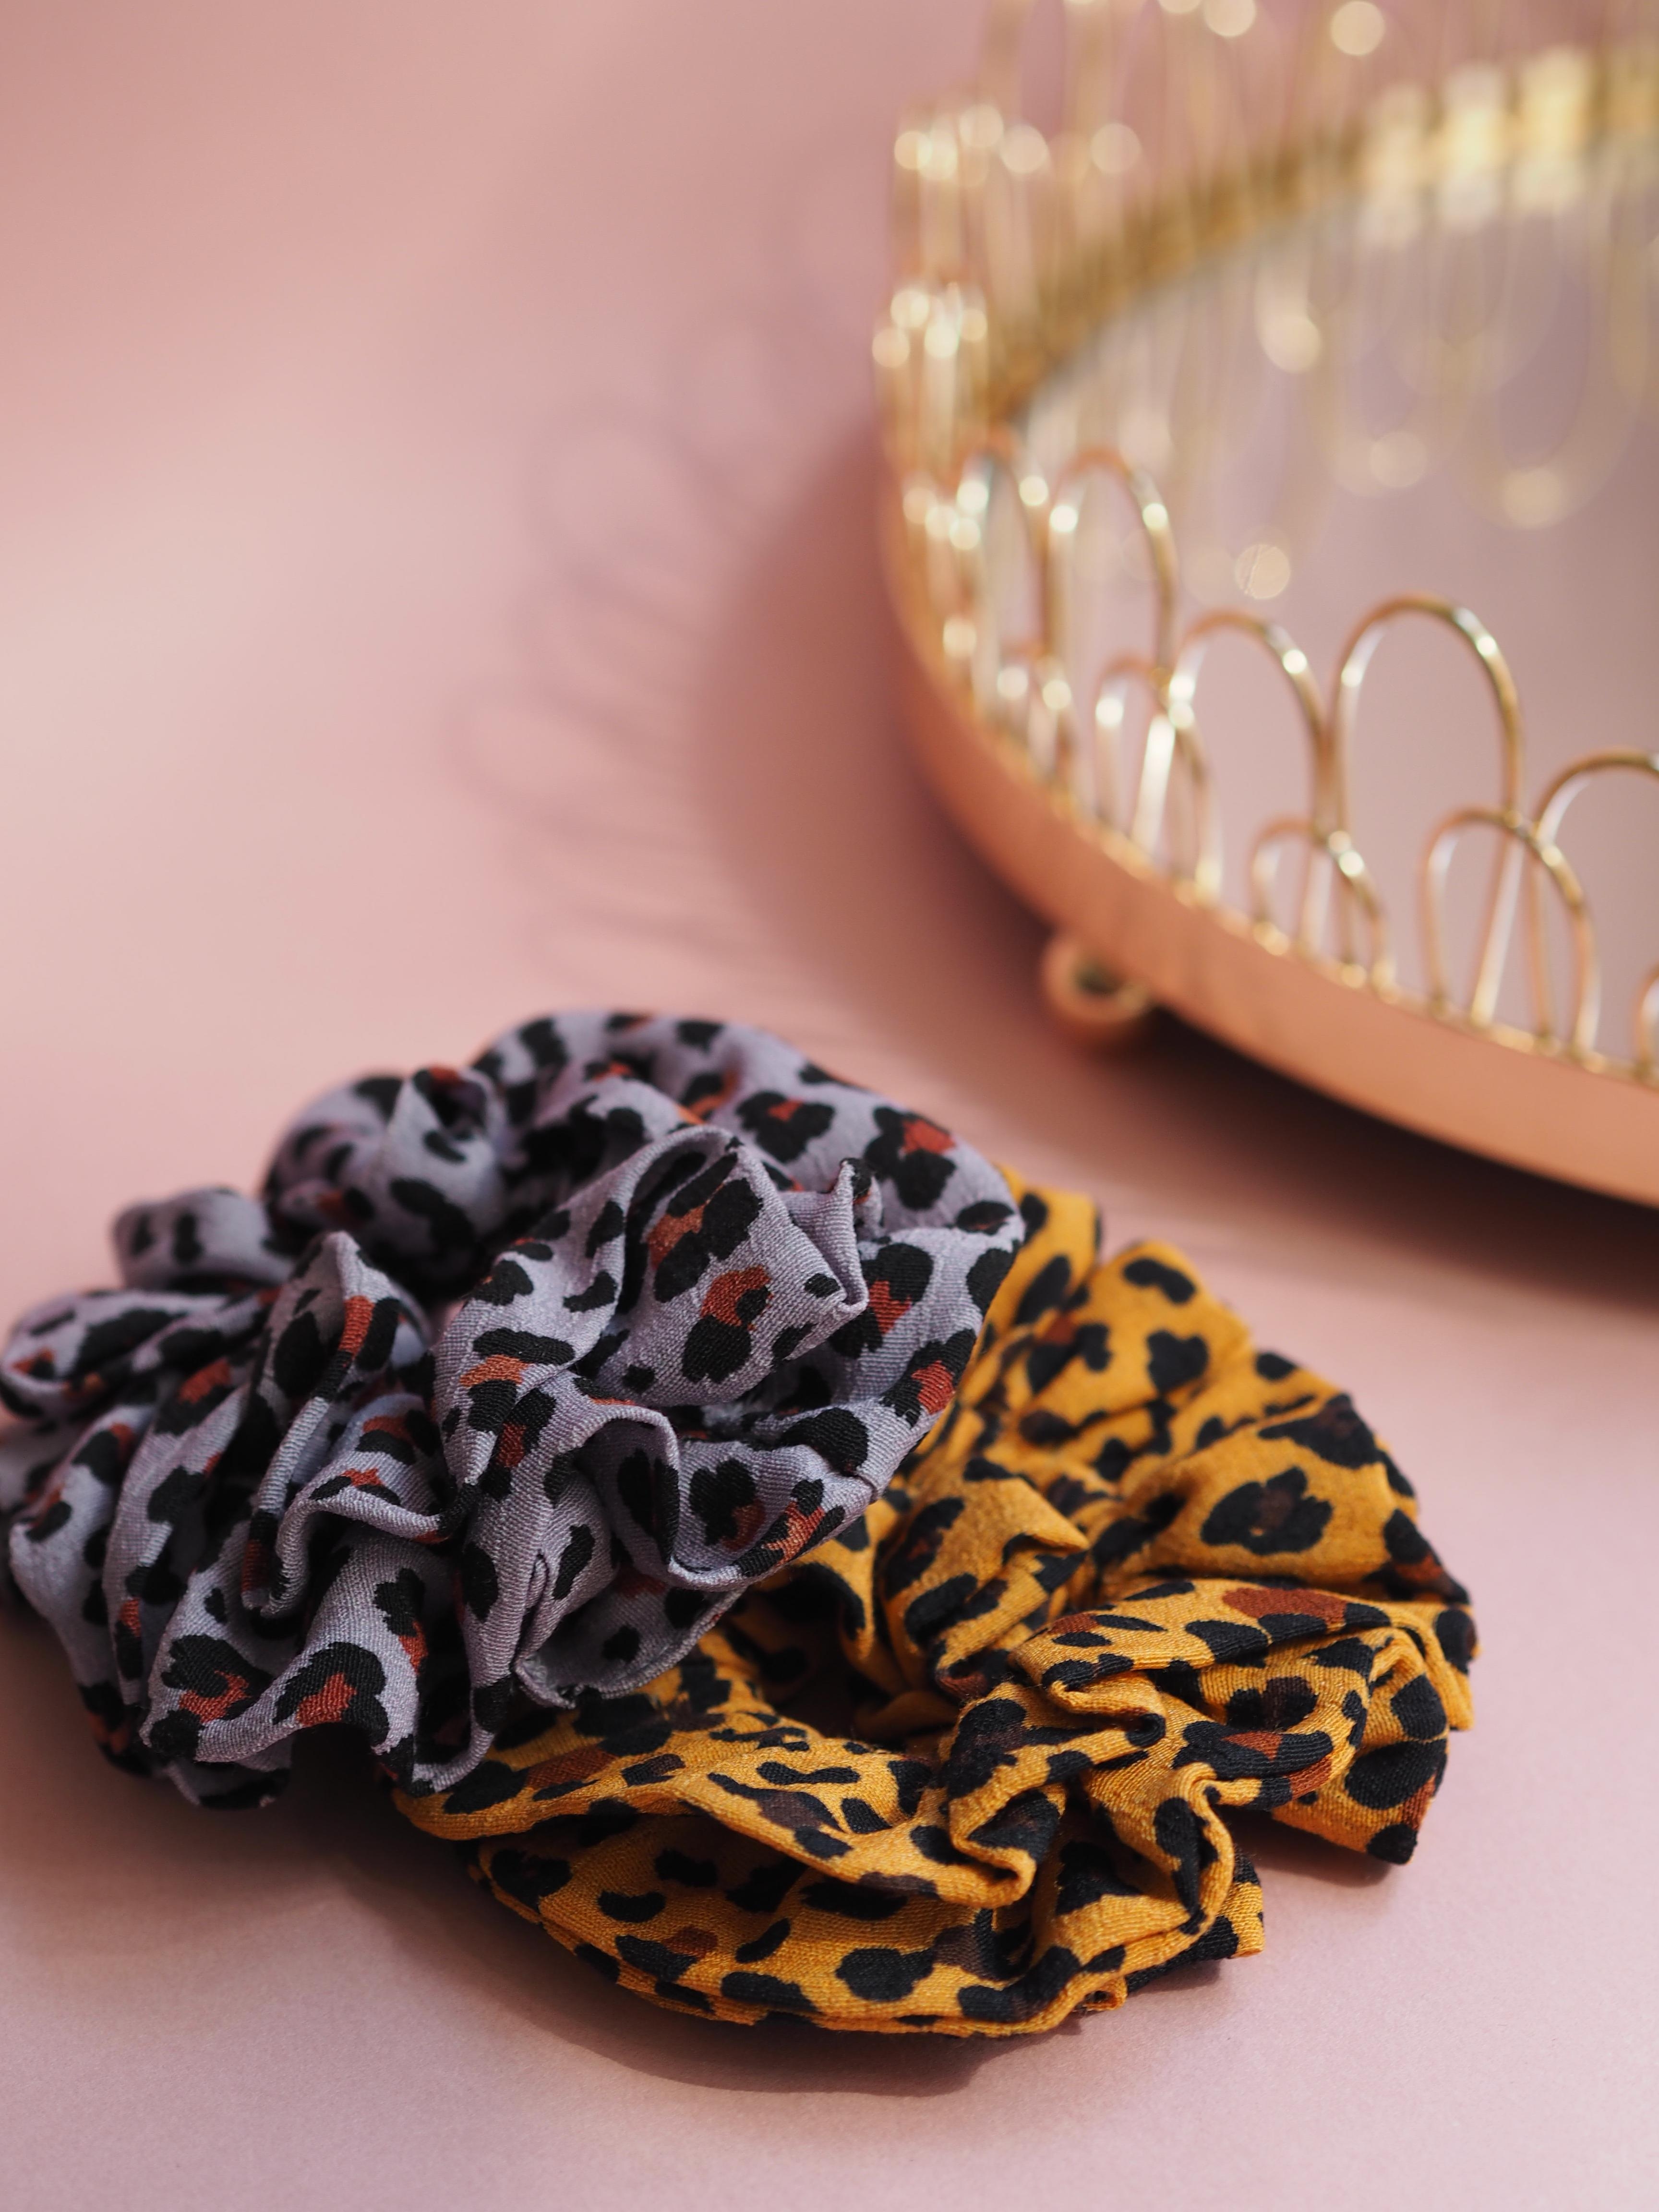 Coole Teile: Leoprint-Scrunchies von Catwalk Junkie werten jede Frisur auf #beautylieblinge #catwalkjunkie #scrunchie